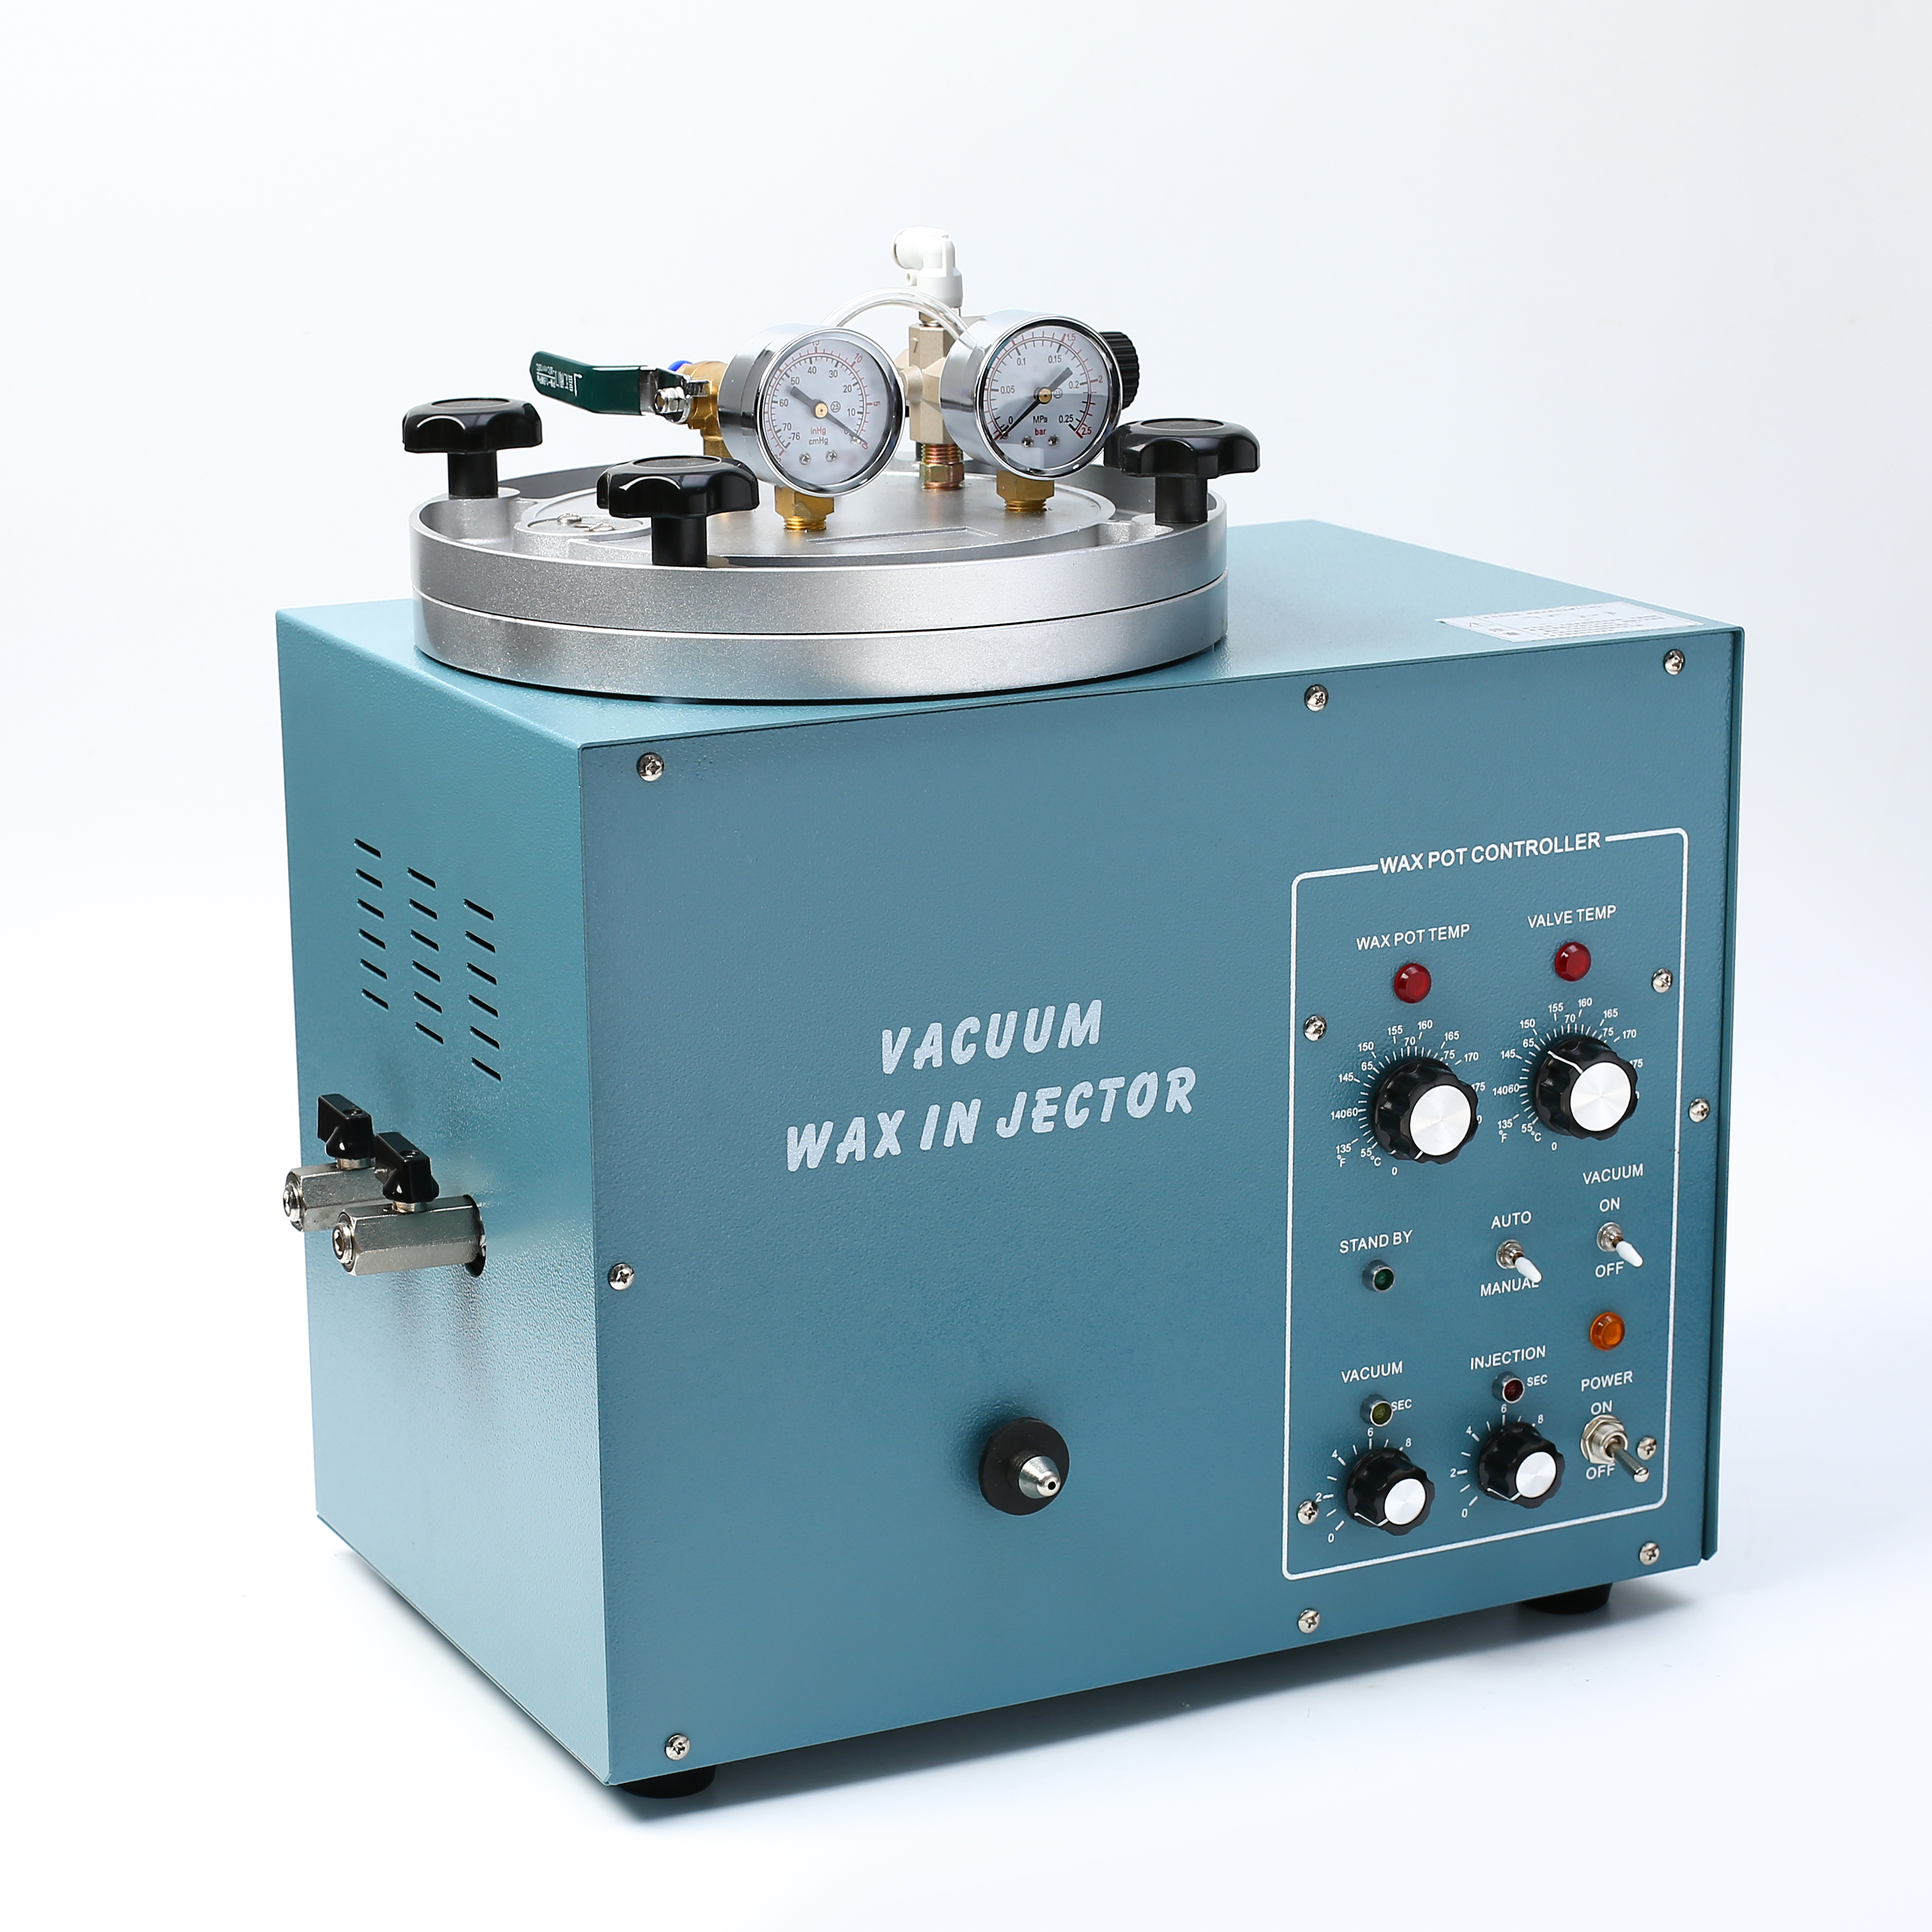 W-04 Vacuum wax injector